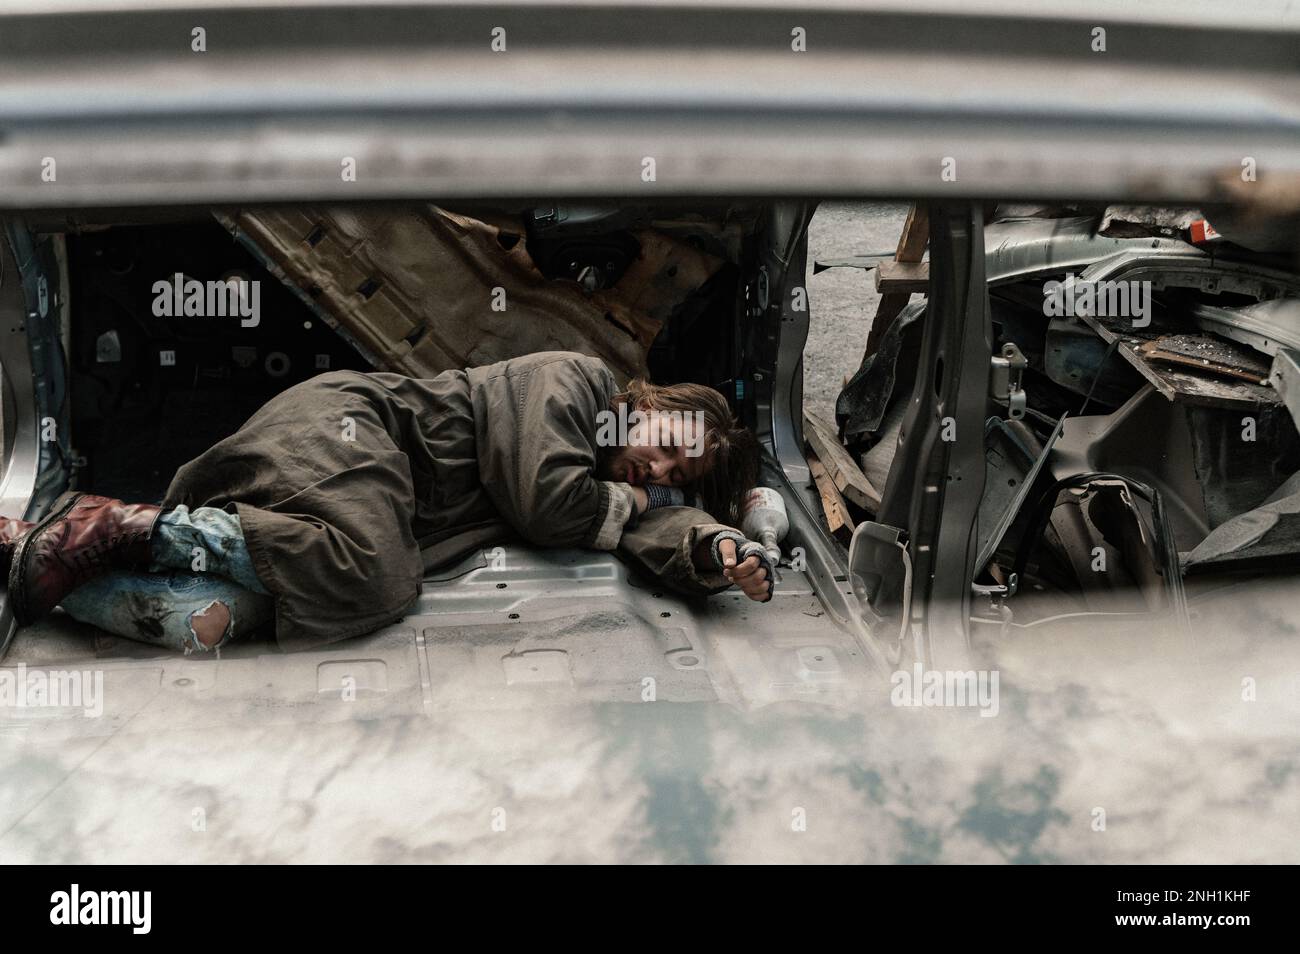 a homeless man sleeps in a car dump Stock Photo